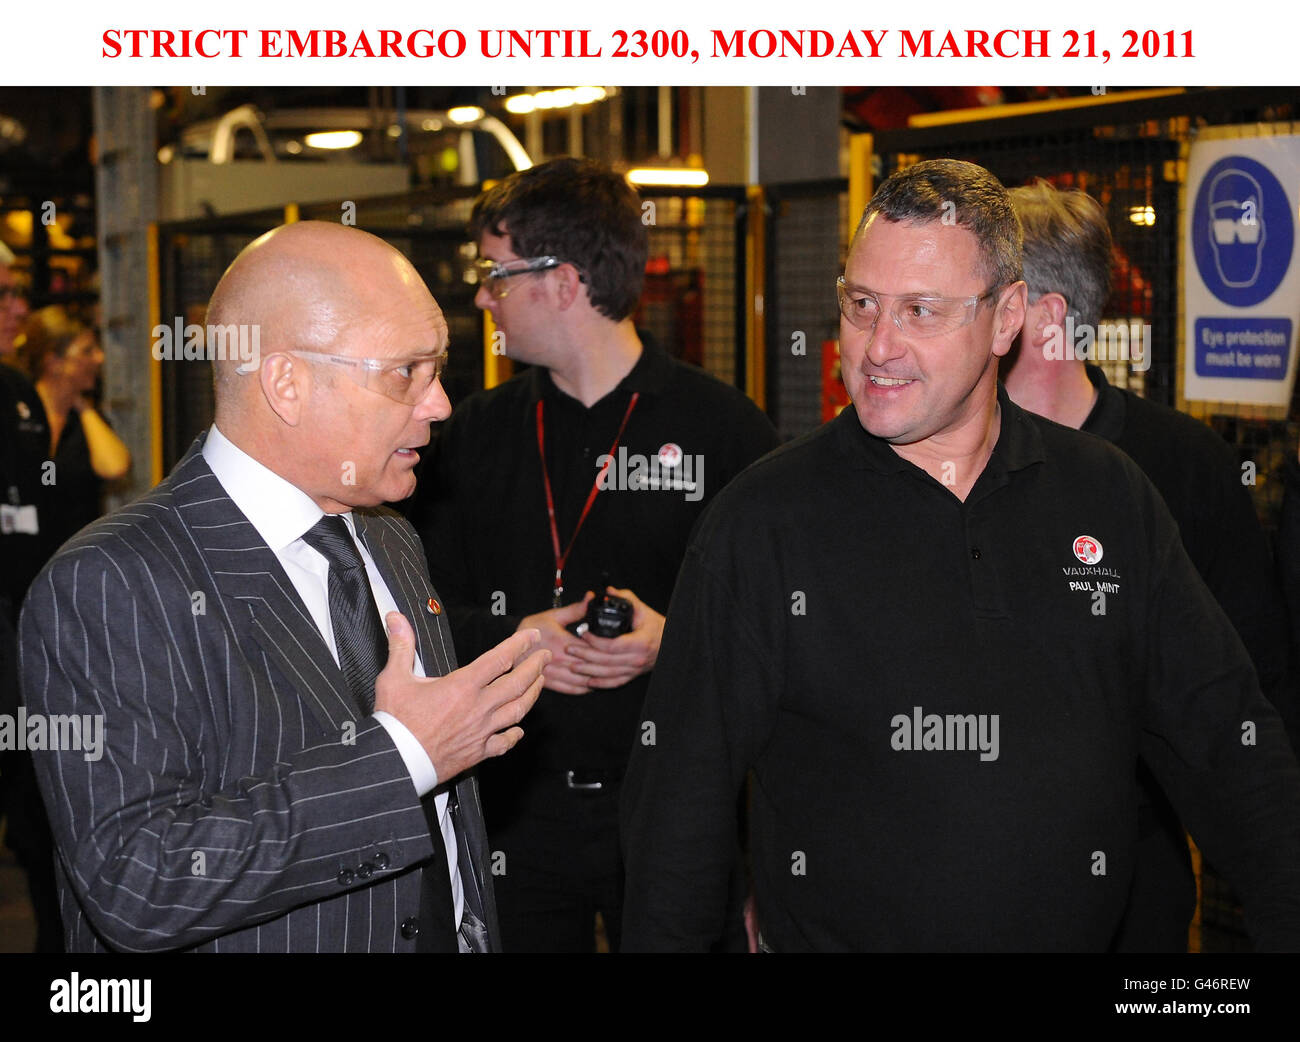 * EMBARGO RIGOROSO FINO al 2300, LUNEDÌ 21 MARZO 2011* la leggenda inglese Ray Wilkins durante una visita alla fabbrica Vauxhall a Luton. Foto Stock